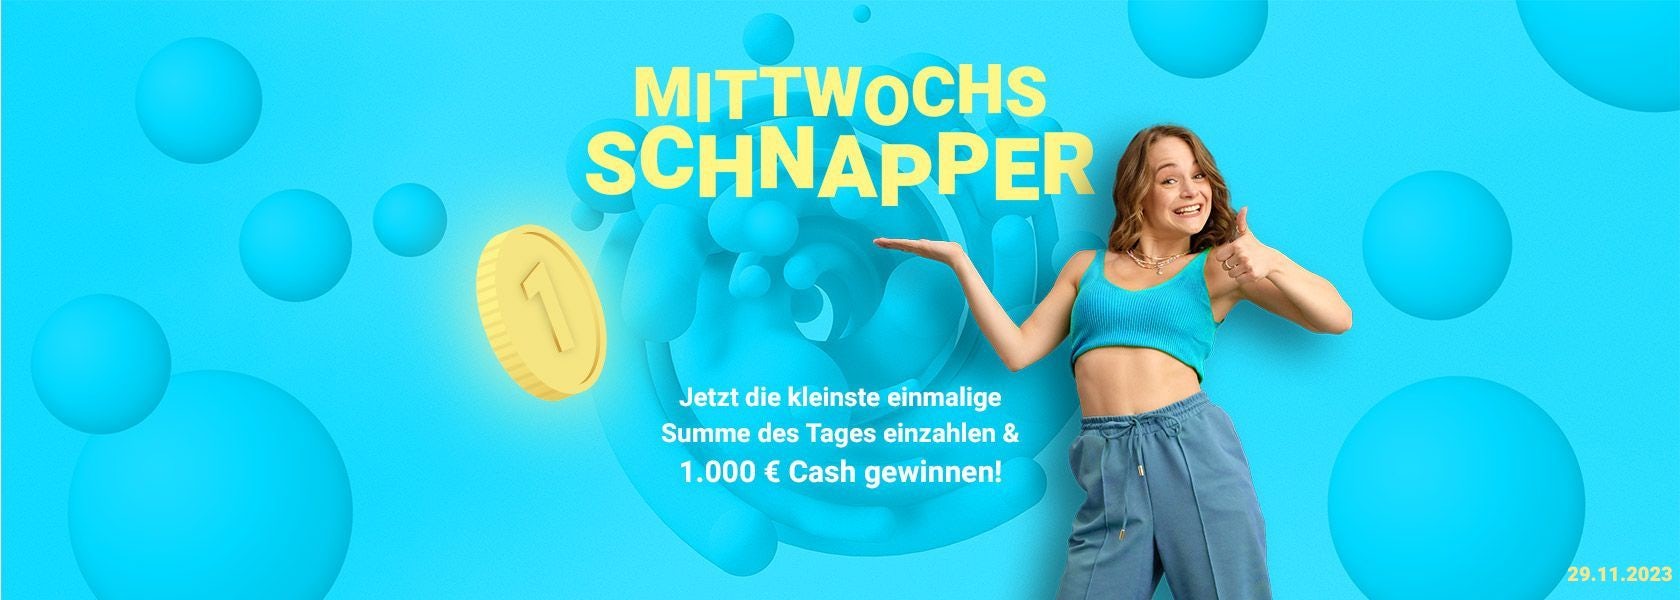 mittwochs-schnapper-bbo-291123